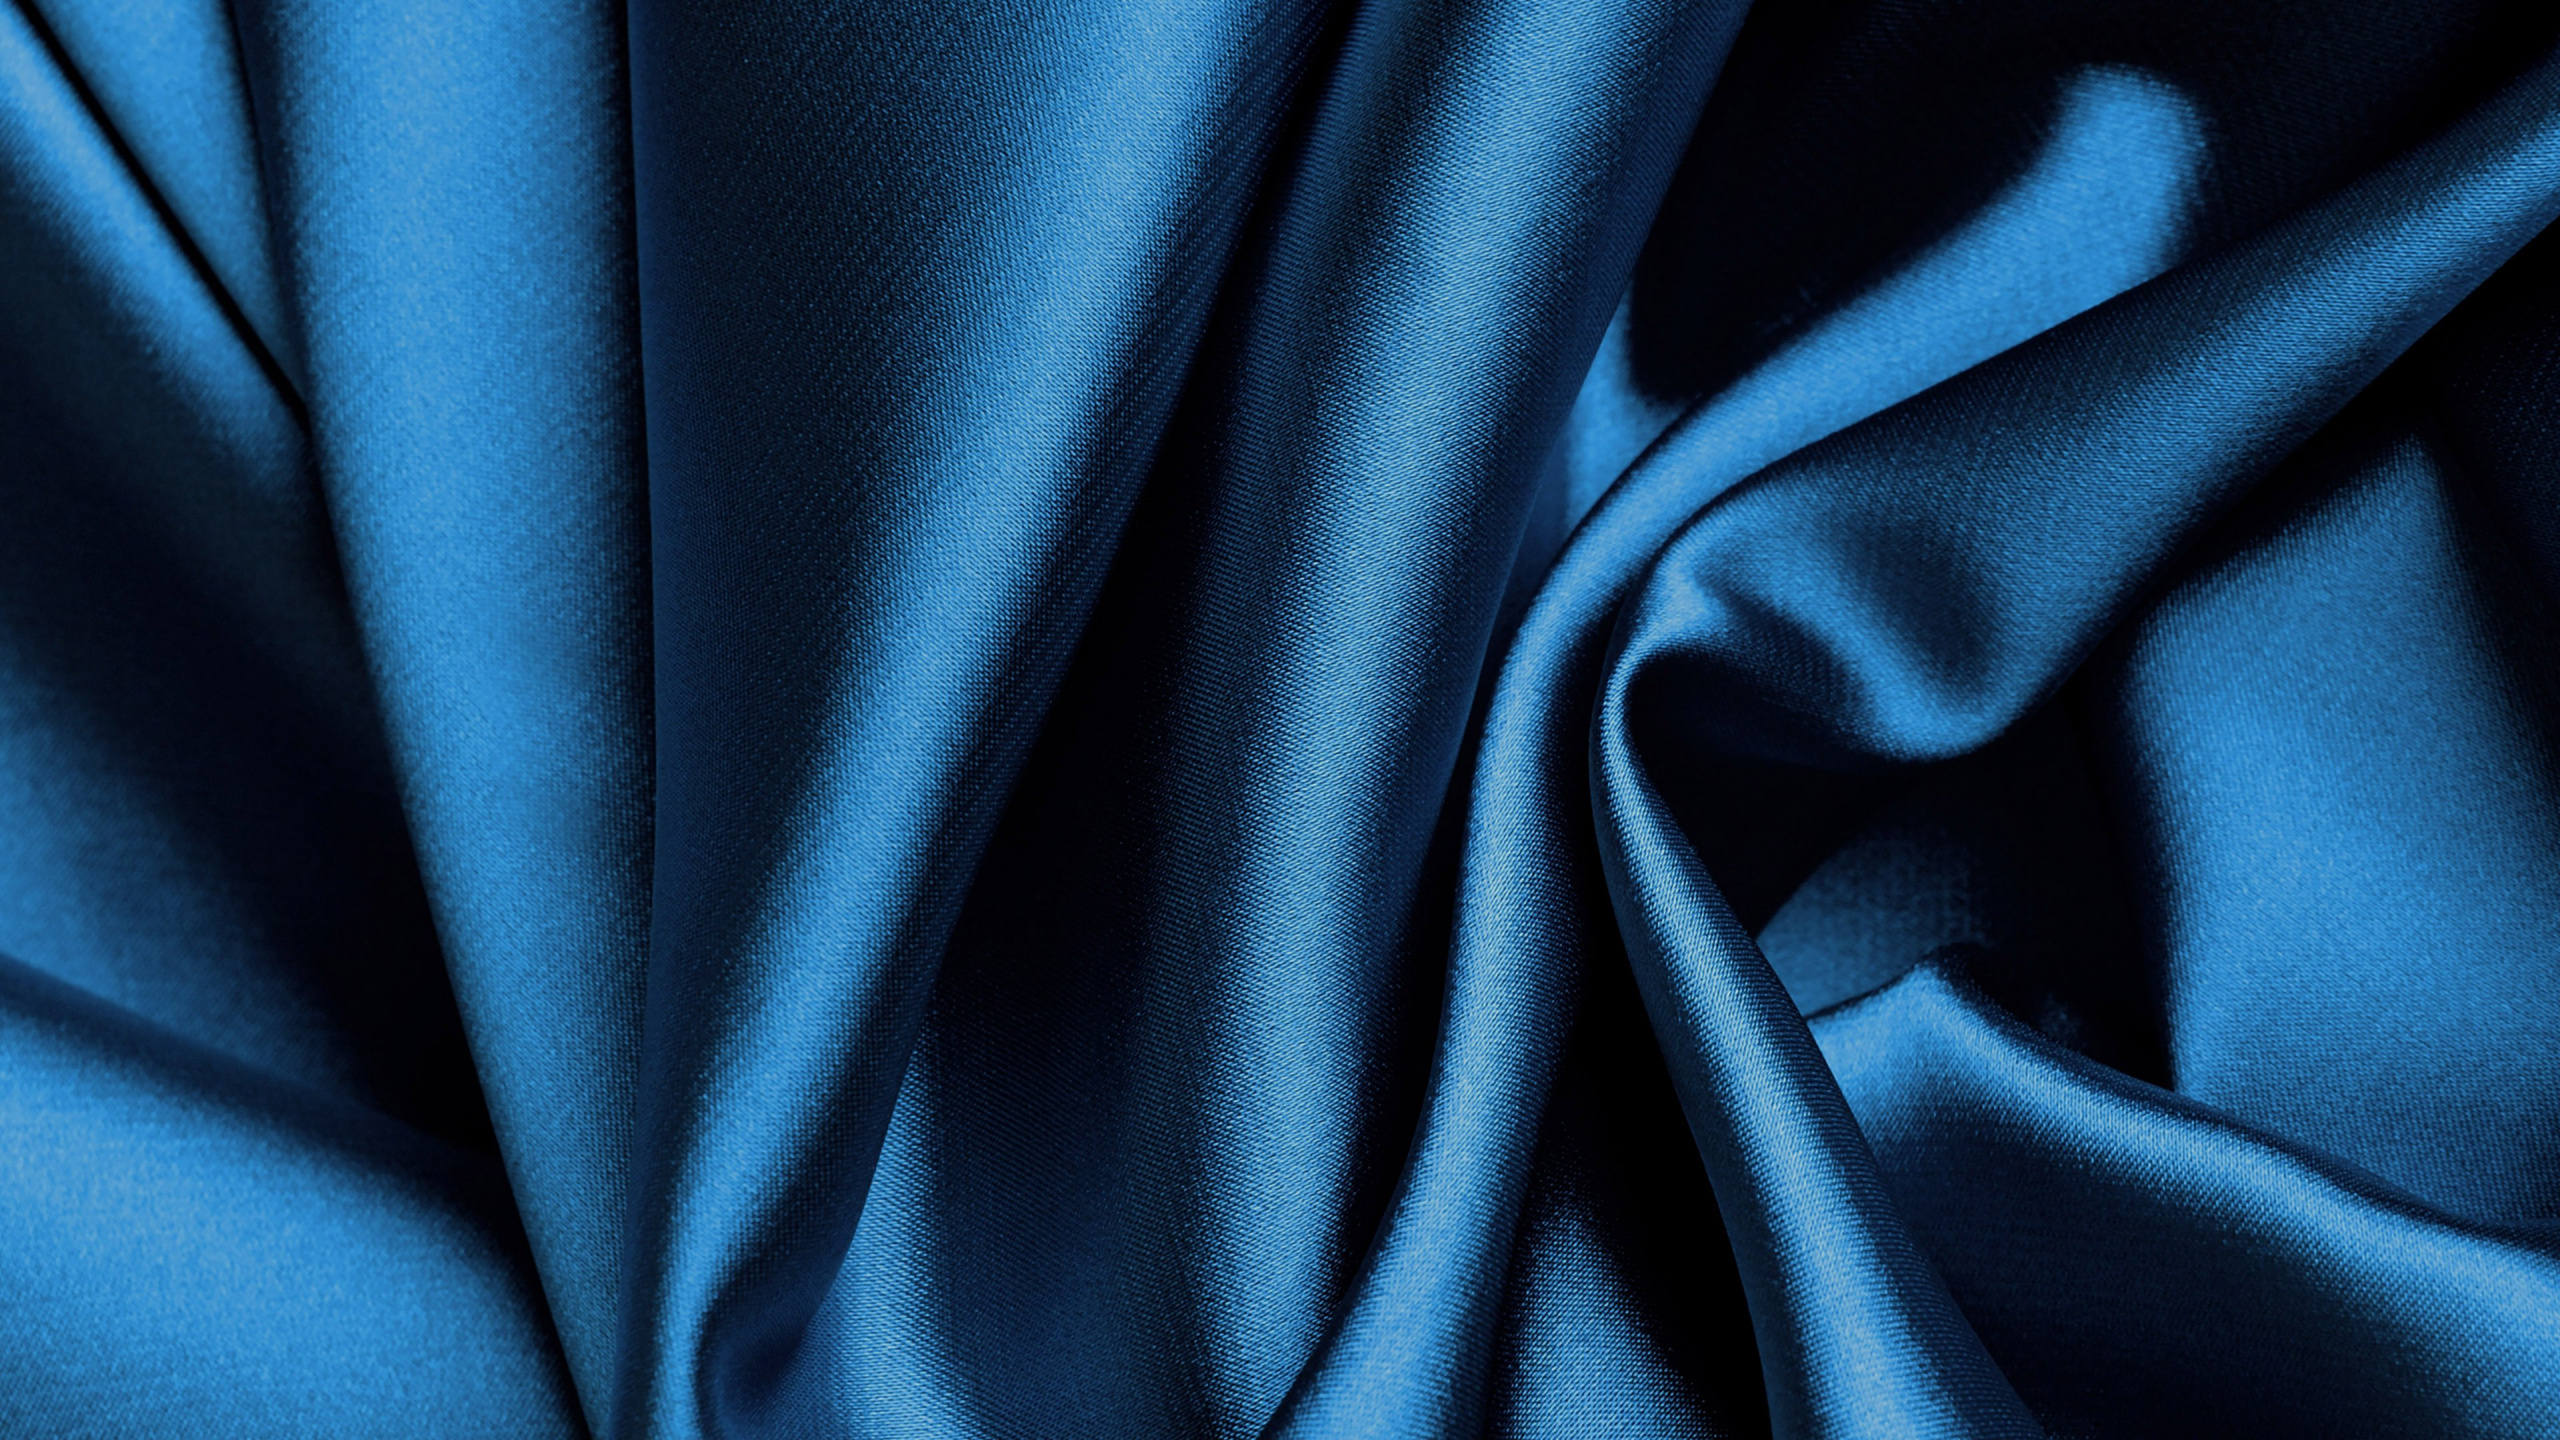 Blaues Textil in Nahaufnahmen. Wallpaper in 2560x1440 Resolution